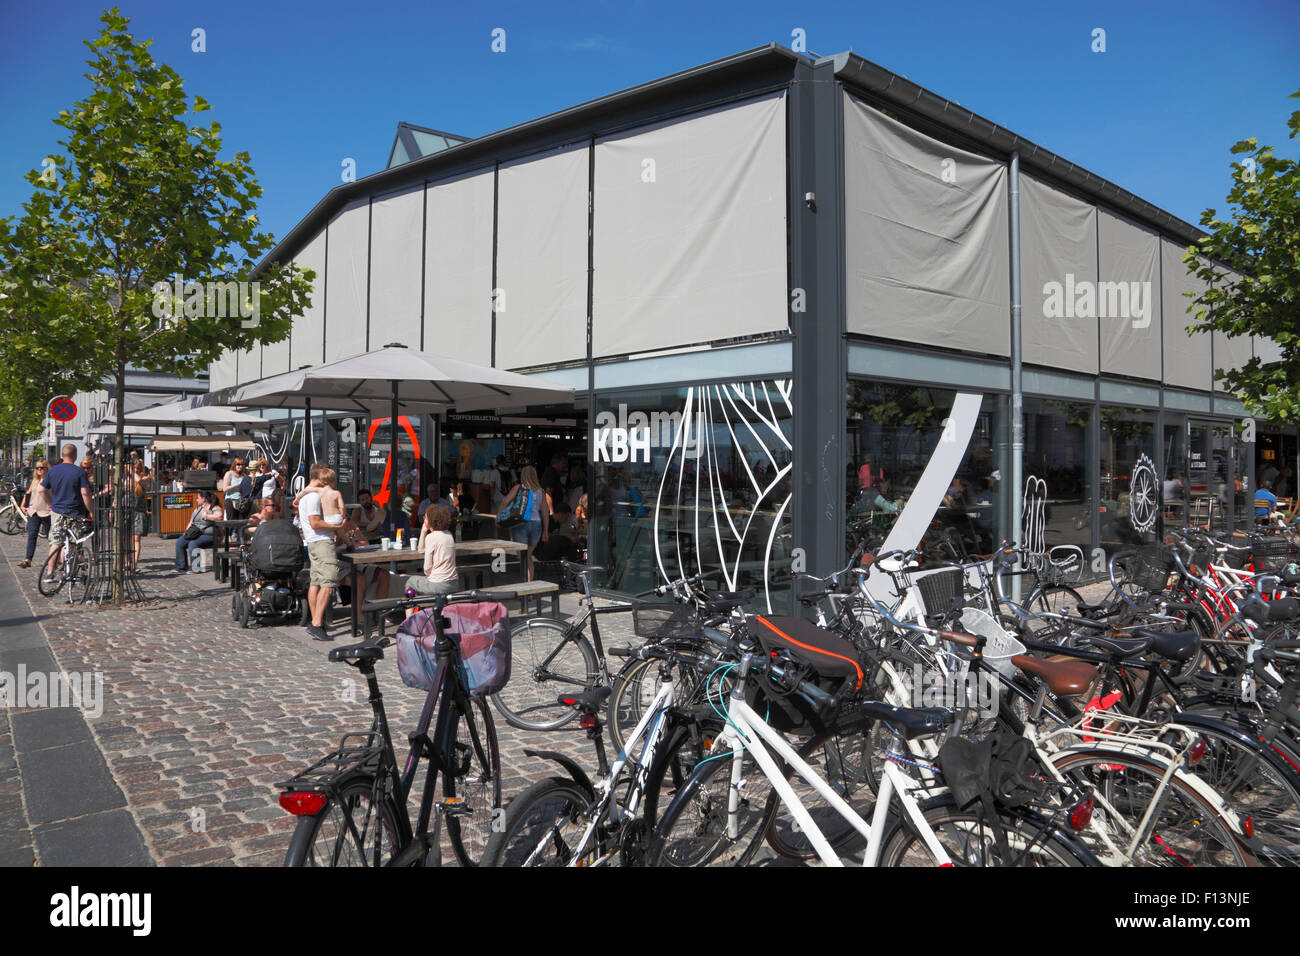 Torvehallerne, der überdachte Lebensmittelmarkt am Israels Plads in Kopenhagen an einem sonnigen Sommertag Samstag Morgen. Sonnenschirme nach unten. Stockfoto